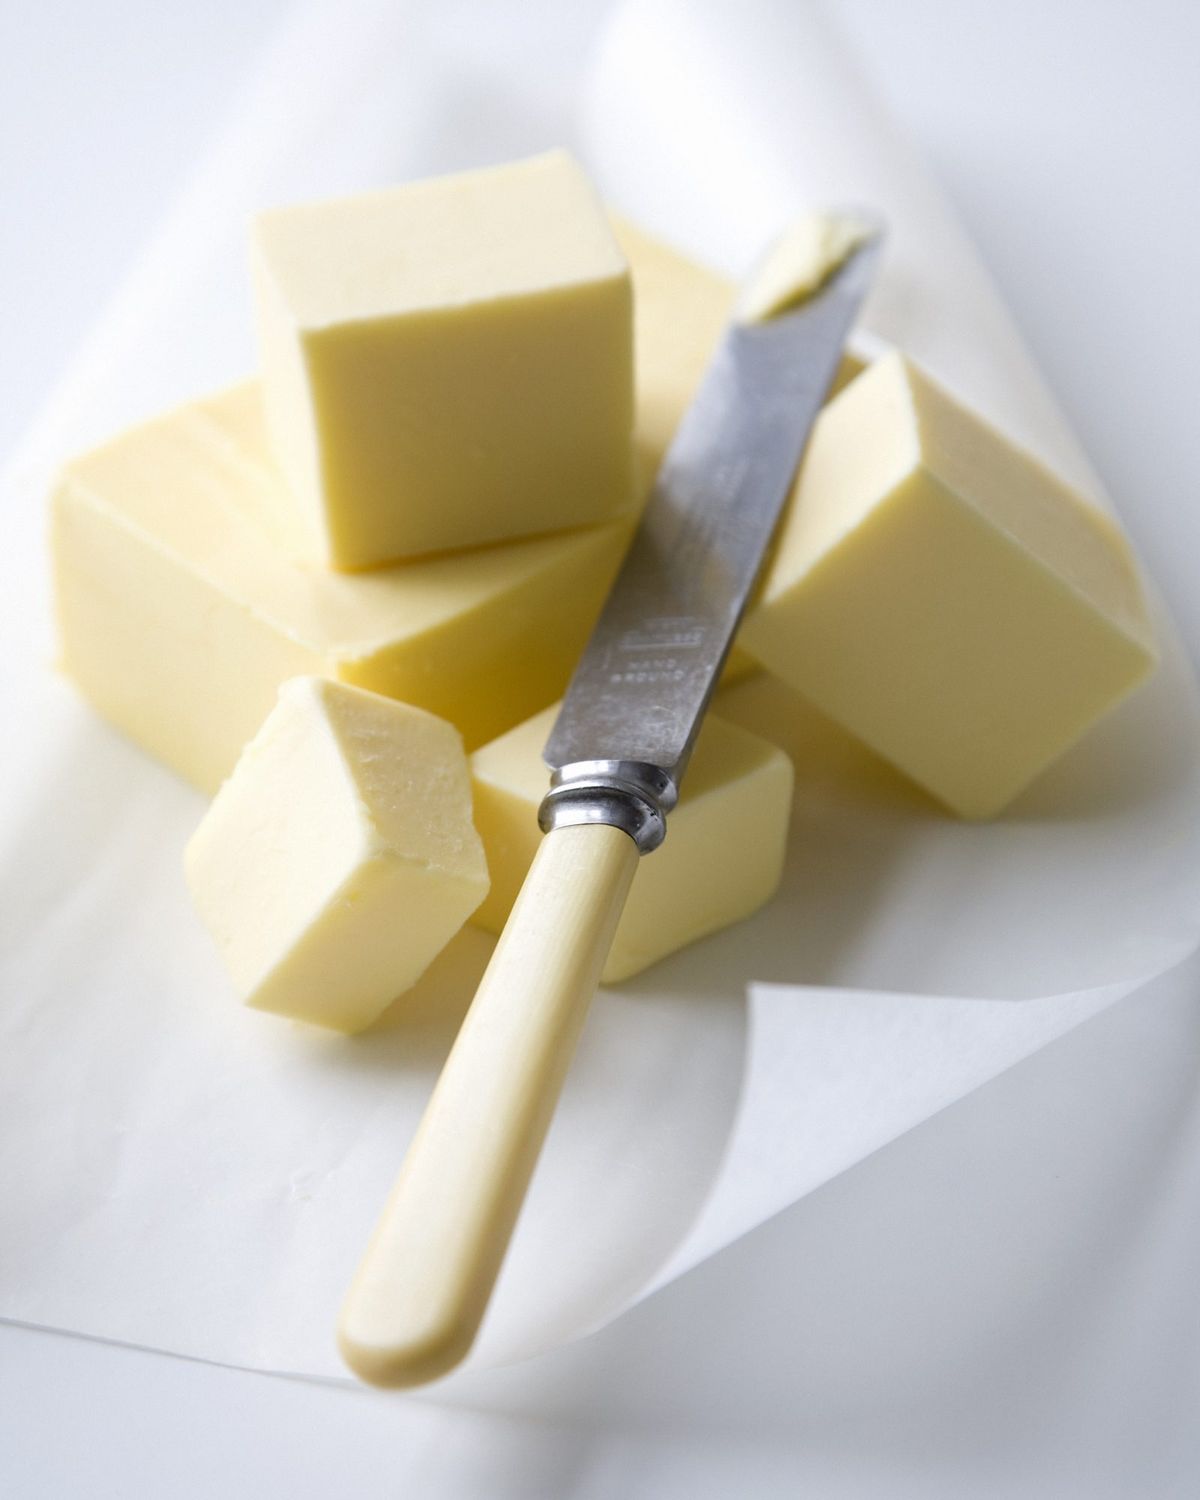 Blocs de mantega i ganivet de mantega sobre paper vegetal